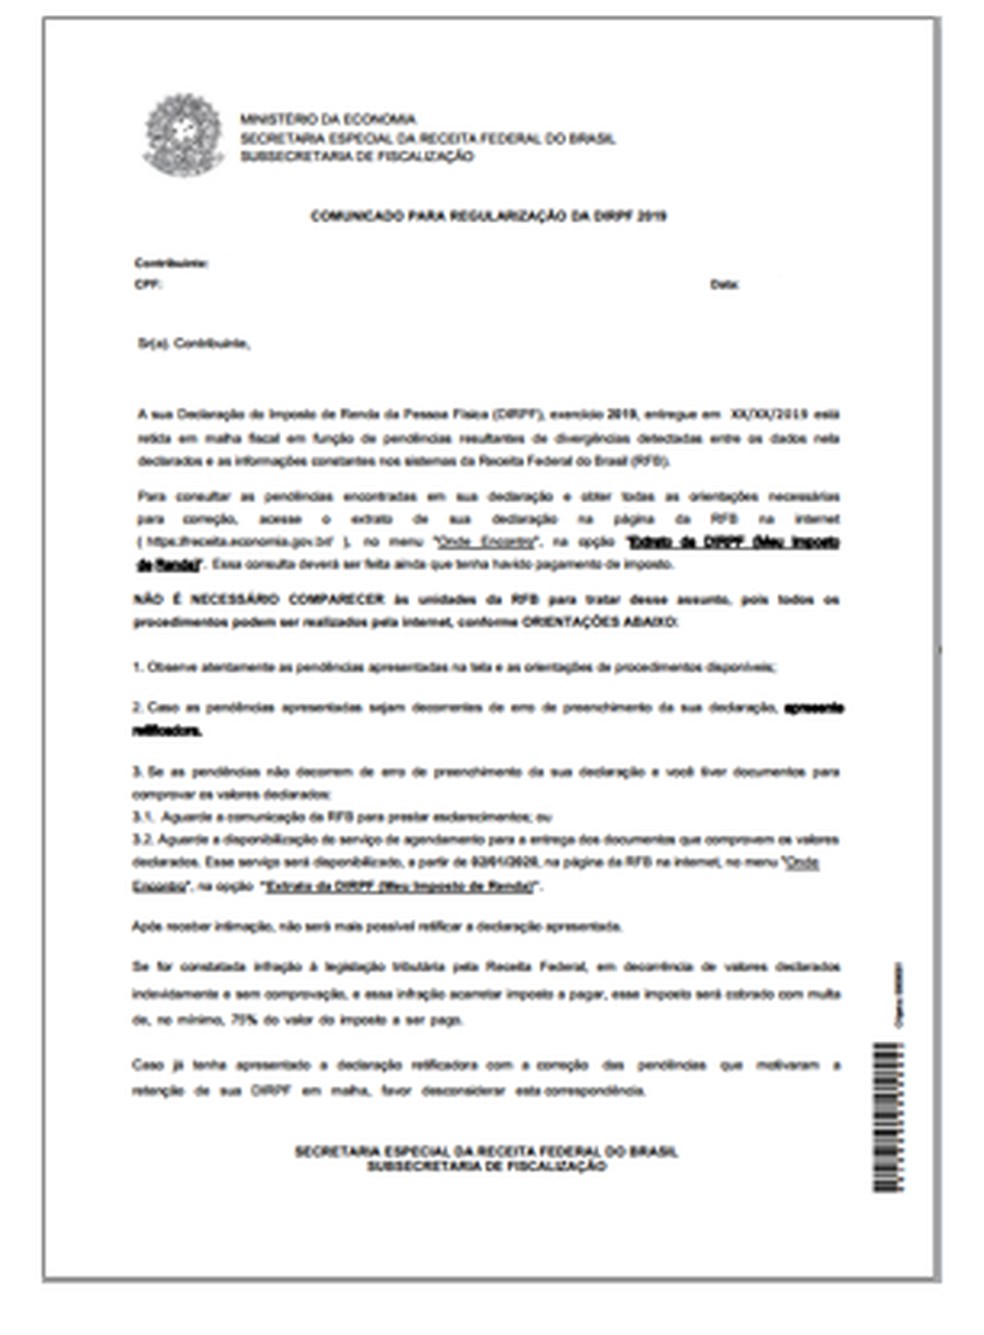 Modelo da carta enviada pelo Fisco — Foto: Receita Federal